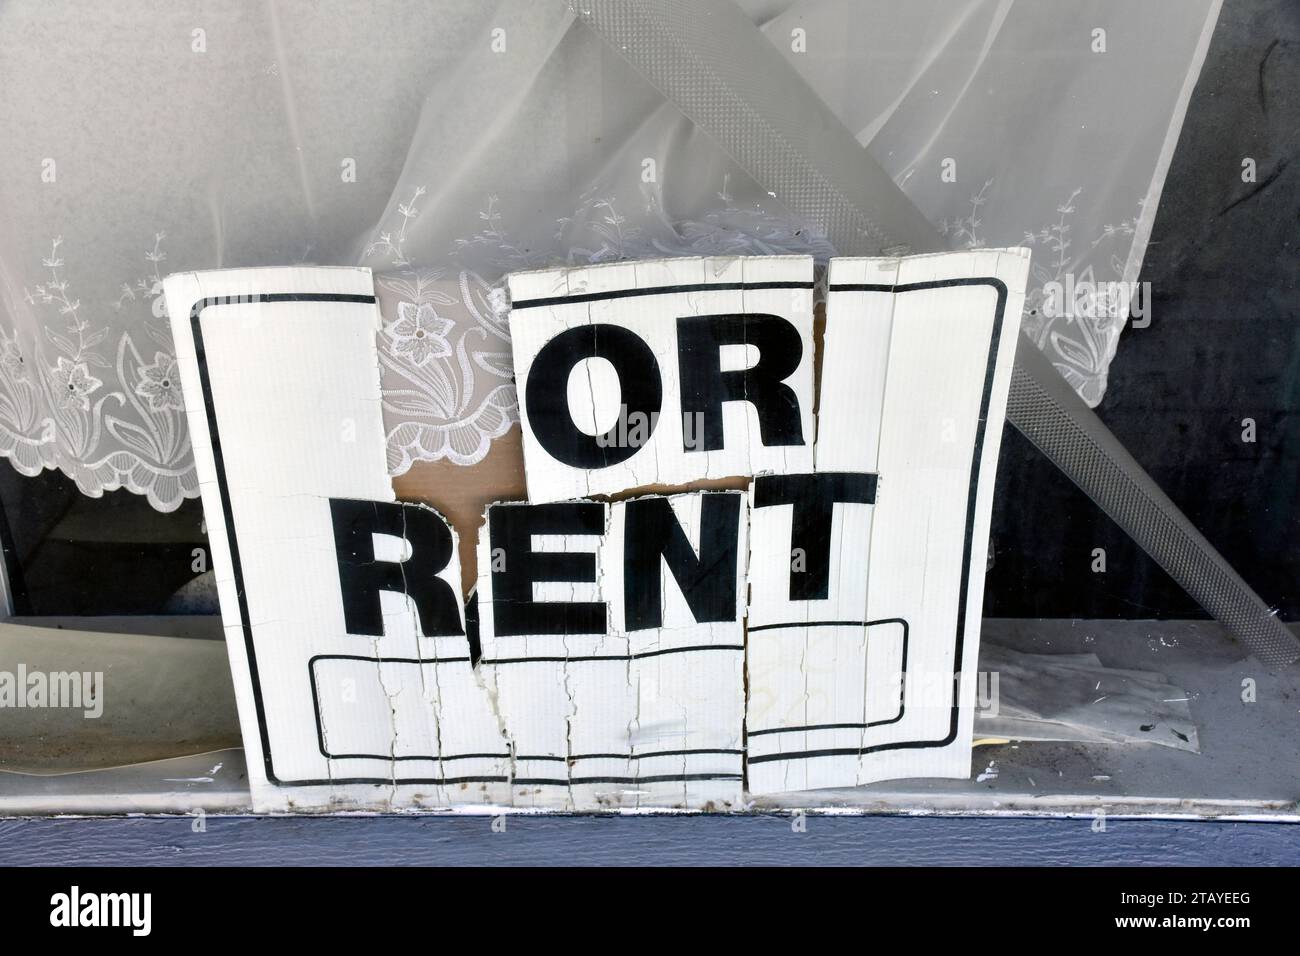 Das Schild "Rated for Miet" wird in einem Fenster angezeigt. Das Konzept der gewerblichen Immobilienvermietung und eines wirtschaftlichen Abschwungs. Stockfoto